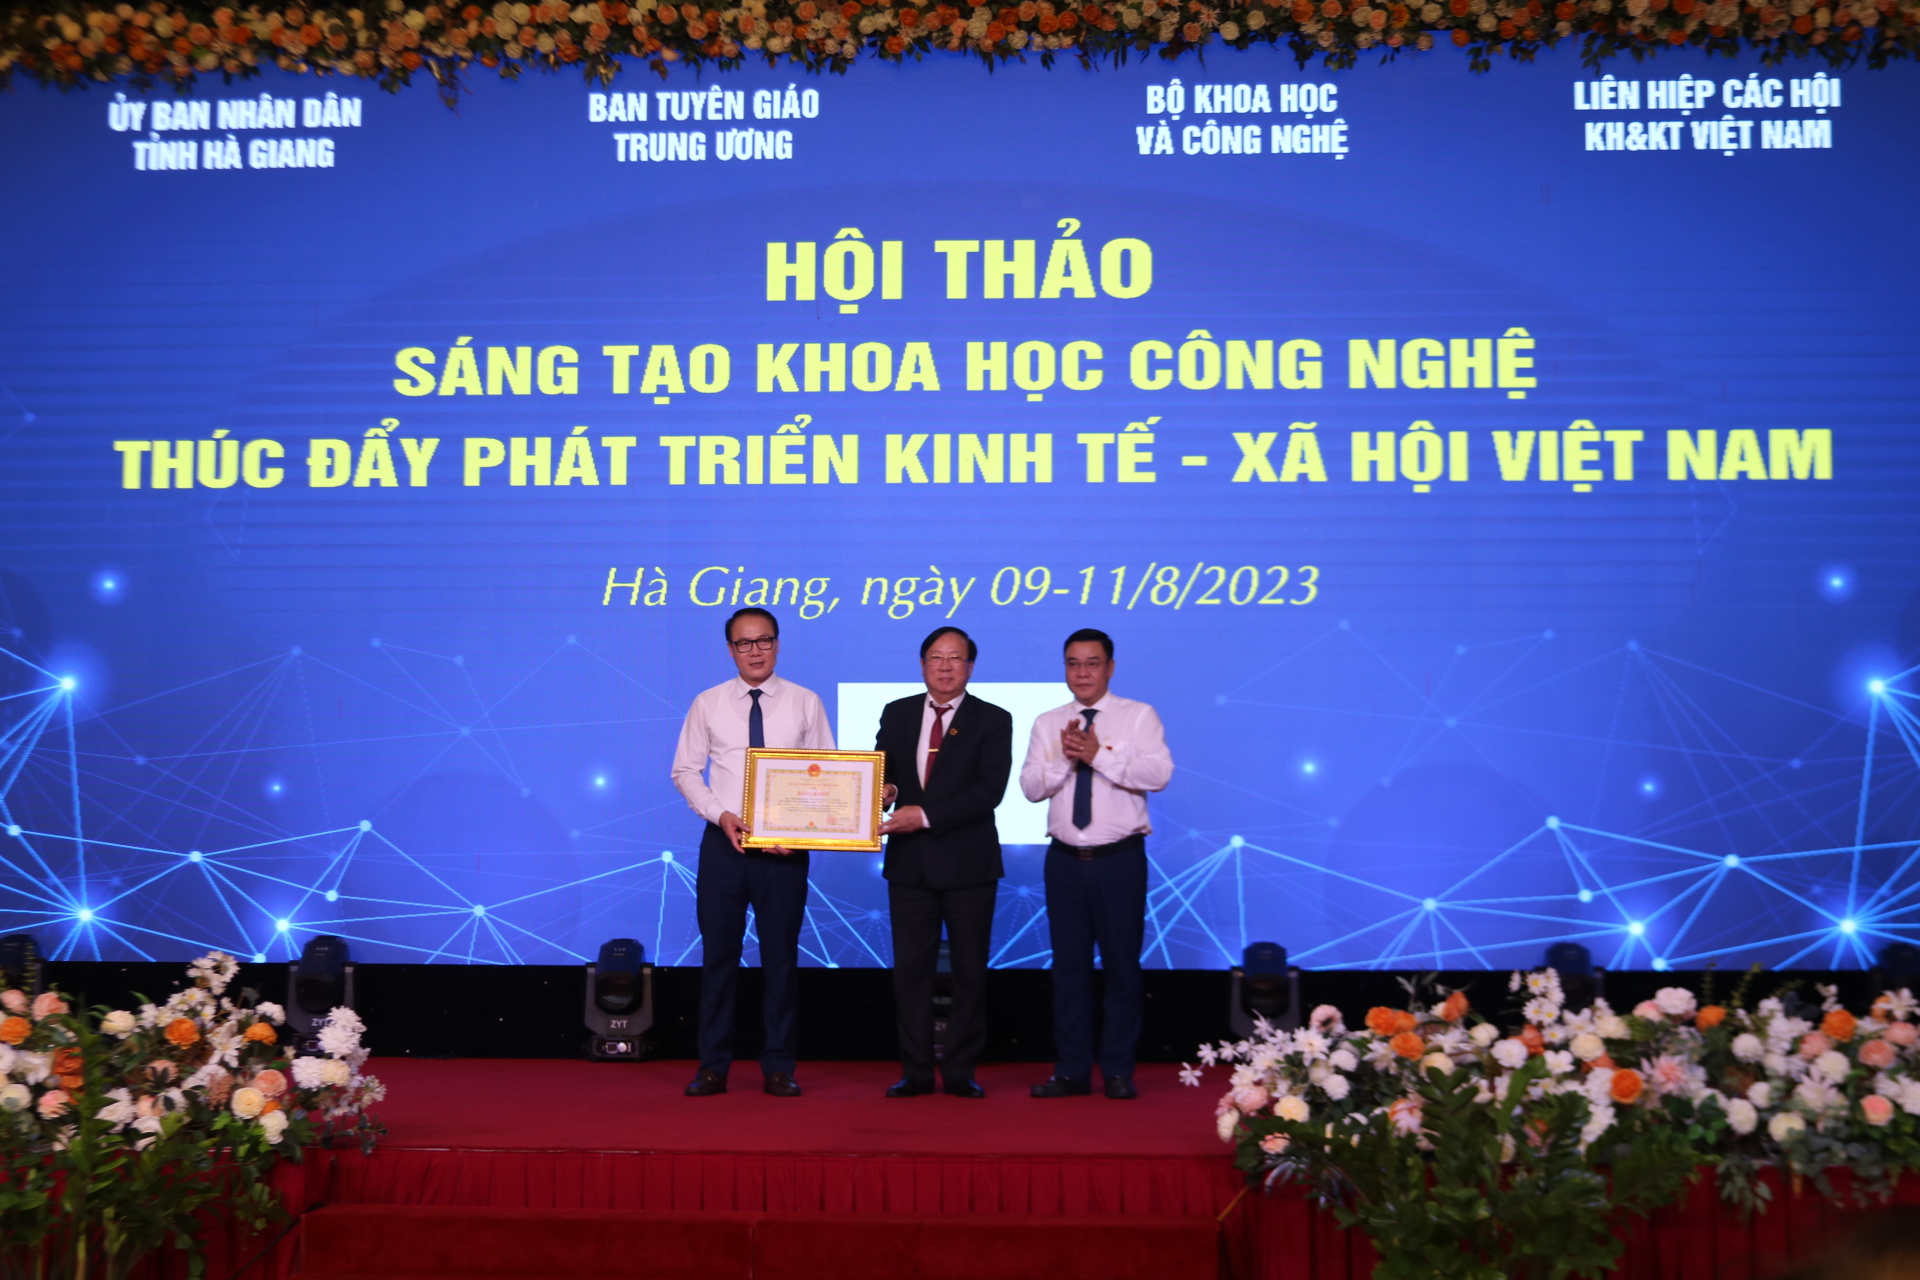 Sáng tạo khoa học công nghệ thúc đẩy phát triển kinh tế - xã hội Việt Nam - Ảnh 8.